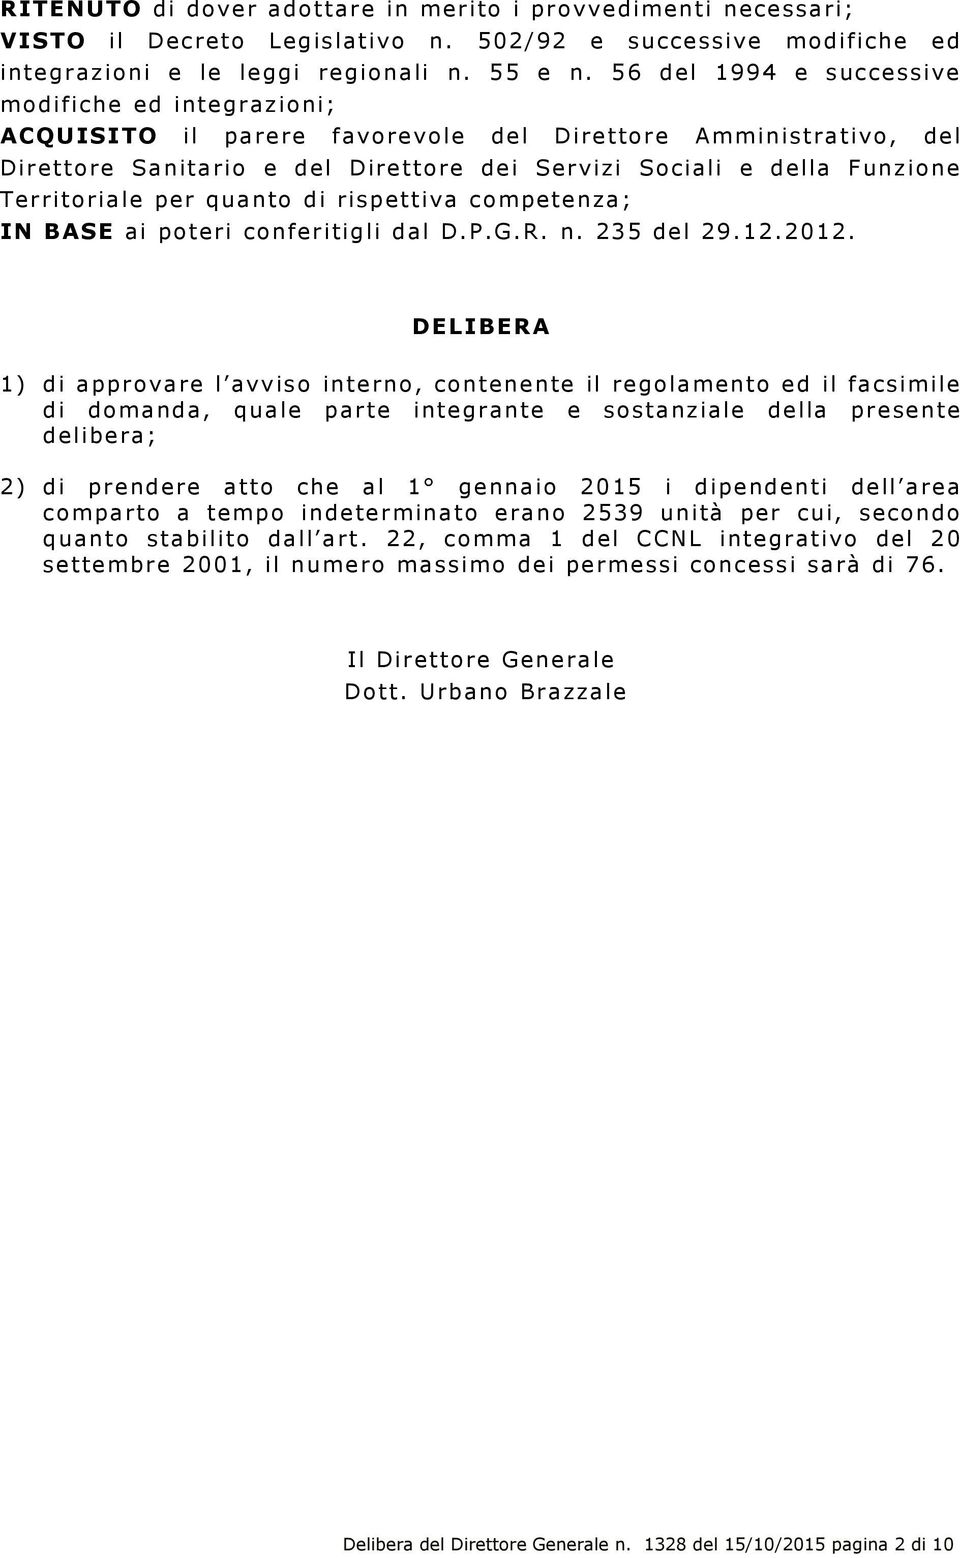 Territoriale per quanto di rispettiva competenza; IN BASE ai poteri conferitigli dal D.P.G.R. n. 235 del 29.12.2012.